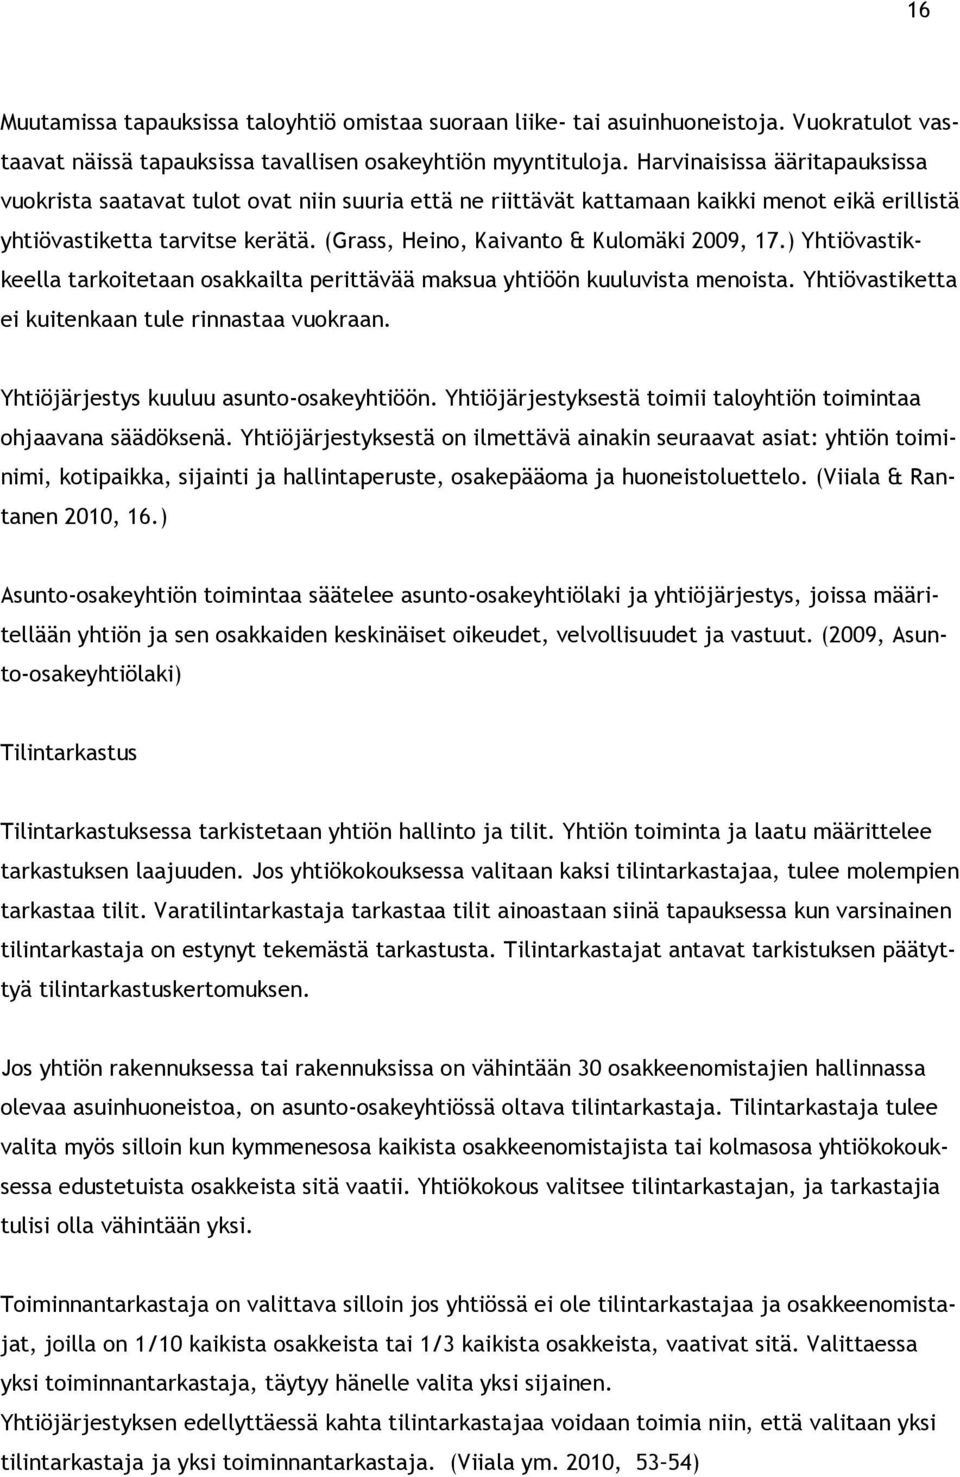 (Grass, Heino, Kaivanto & Kulomäki 2009, 17.) Yhtiövastikkeella tarkoitetaan osakkailta perittävää maksua yhtiöön kuuluvista menoista. Yhtiövastiketta ei kuitenkaan tule rinnastaa vuokraan.